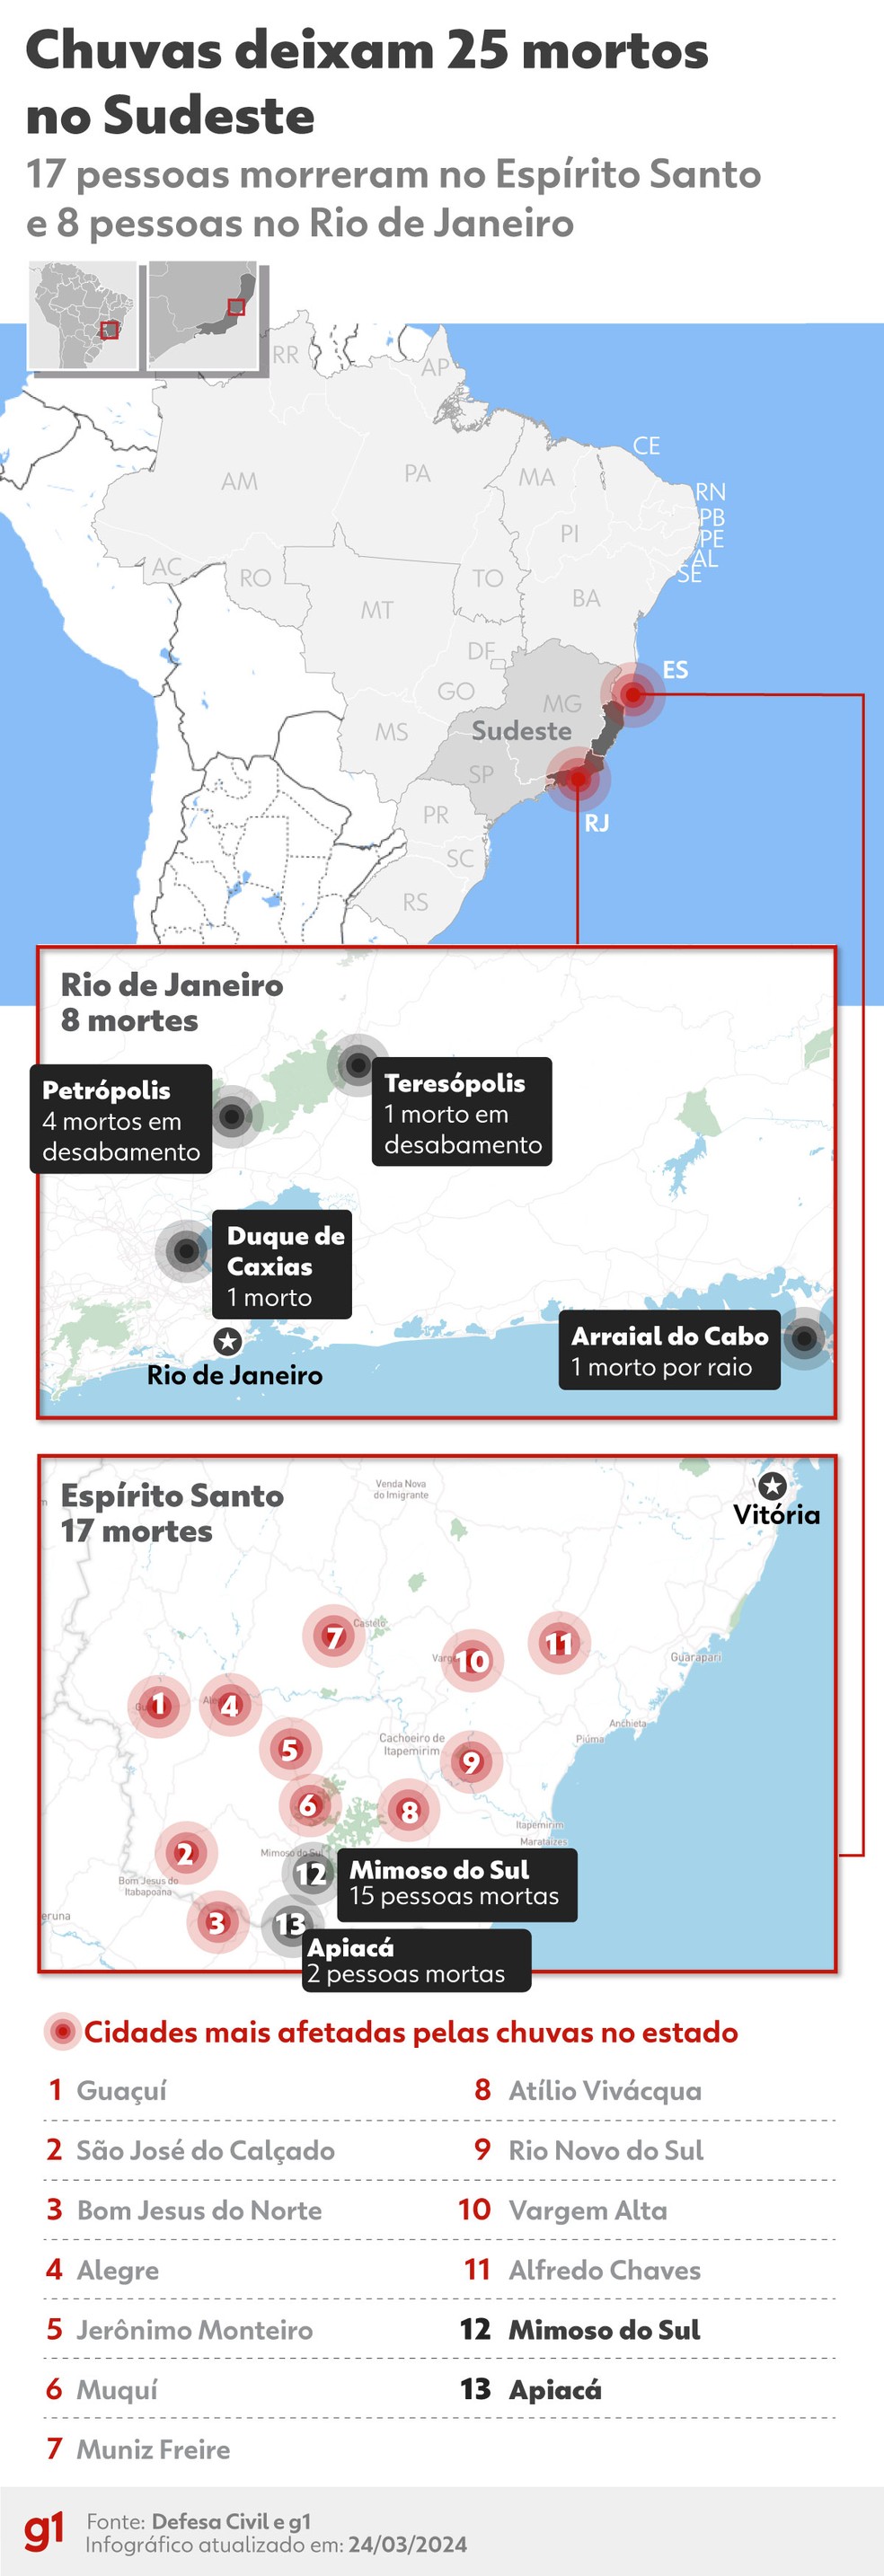 Globo Repórter - NOTÍCIAS - Veja no mapa onde fica localizado o